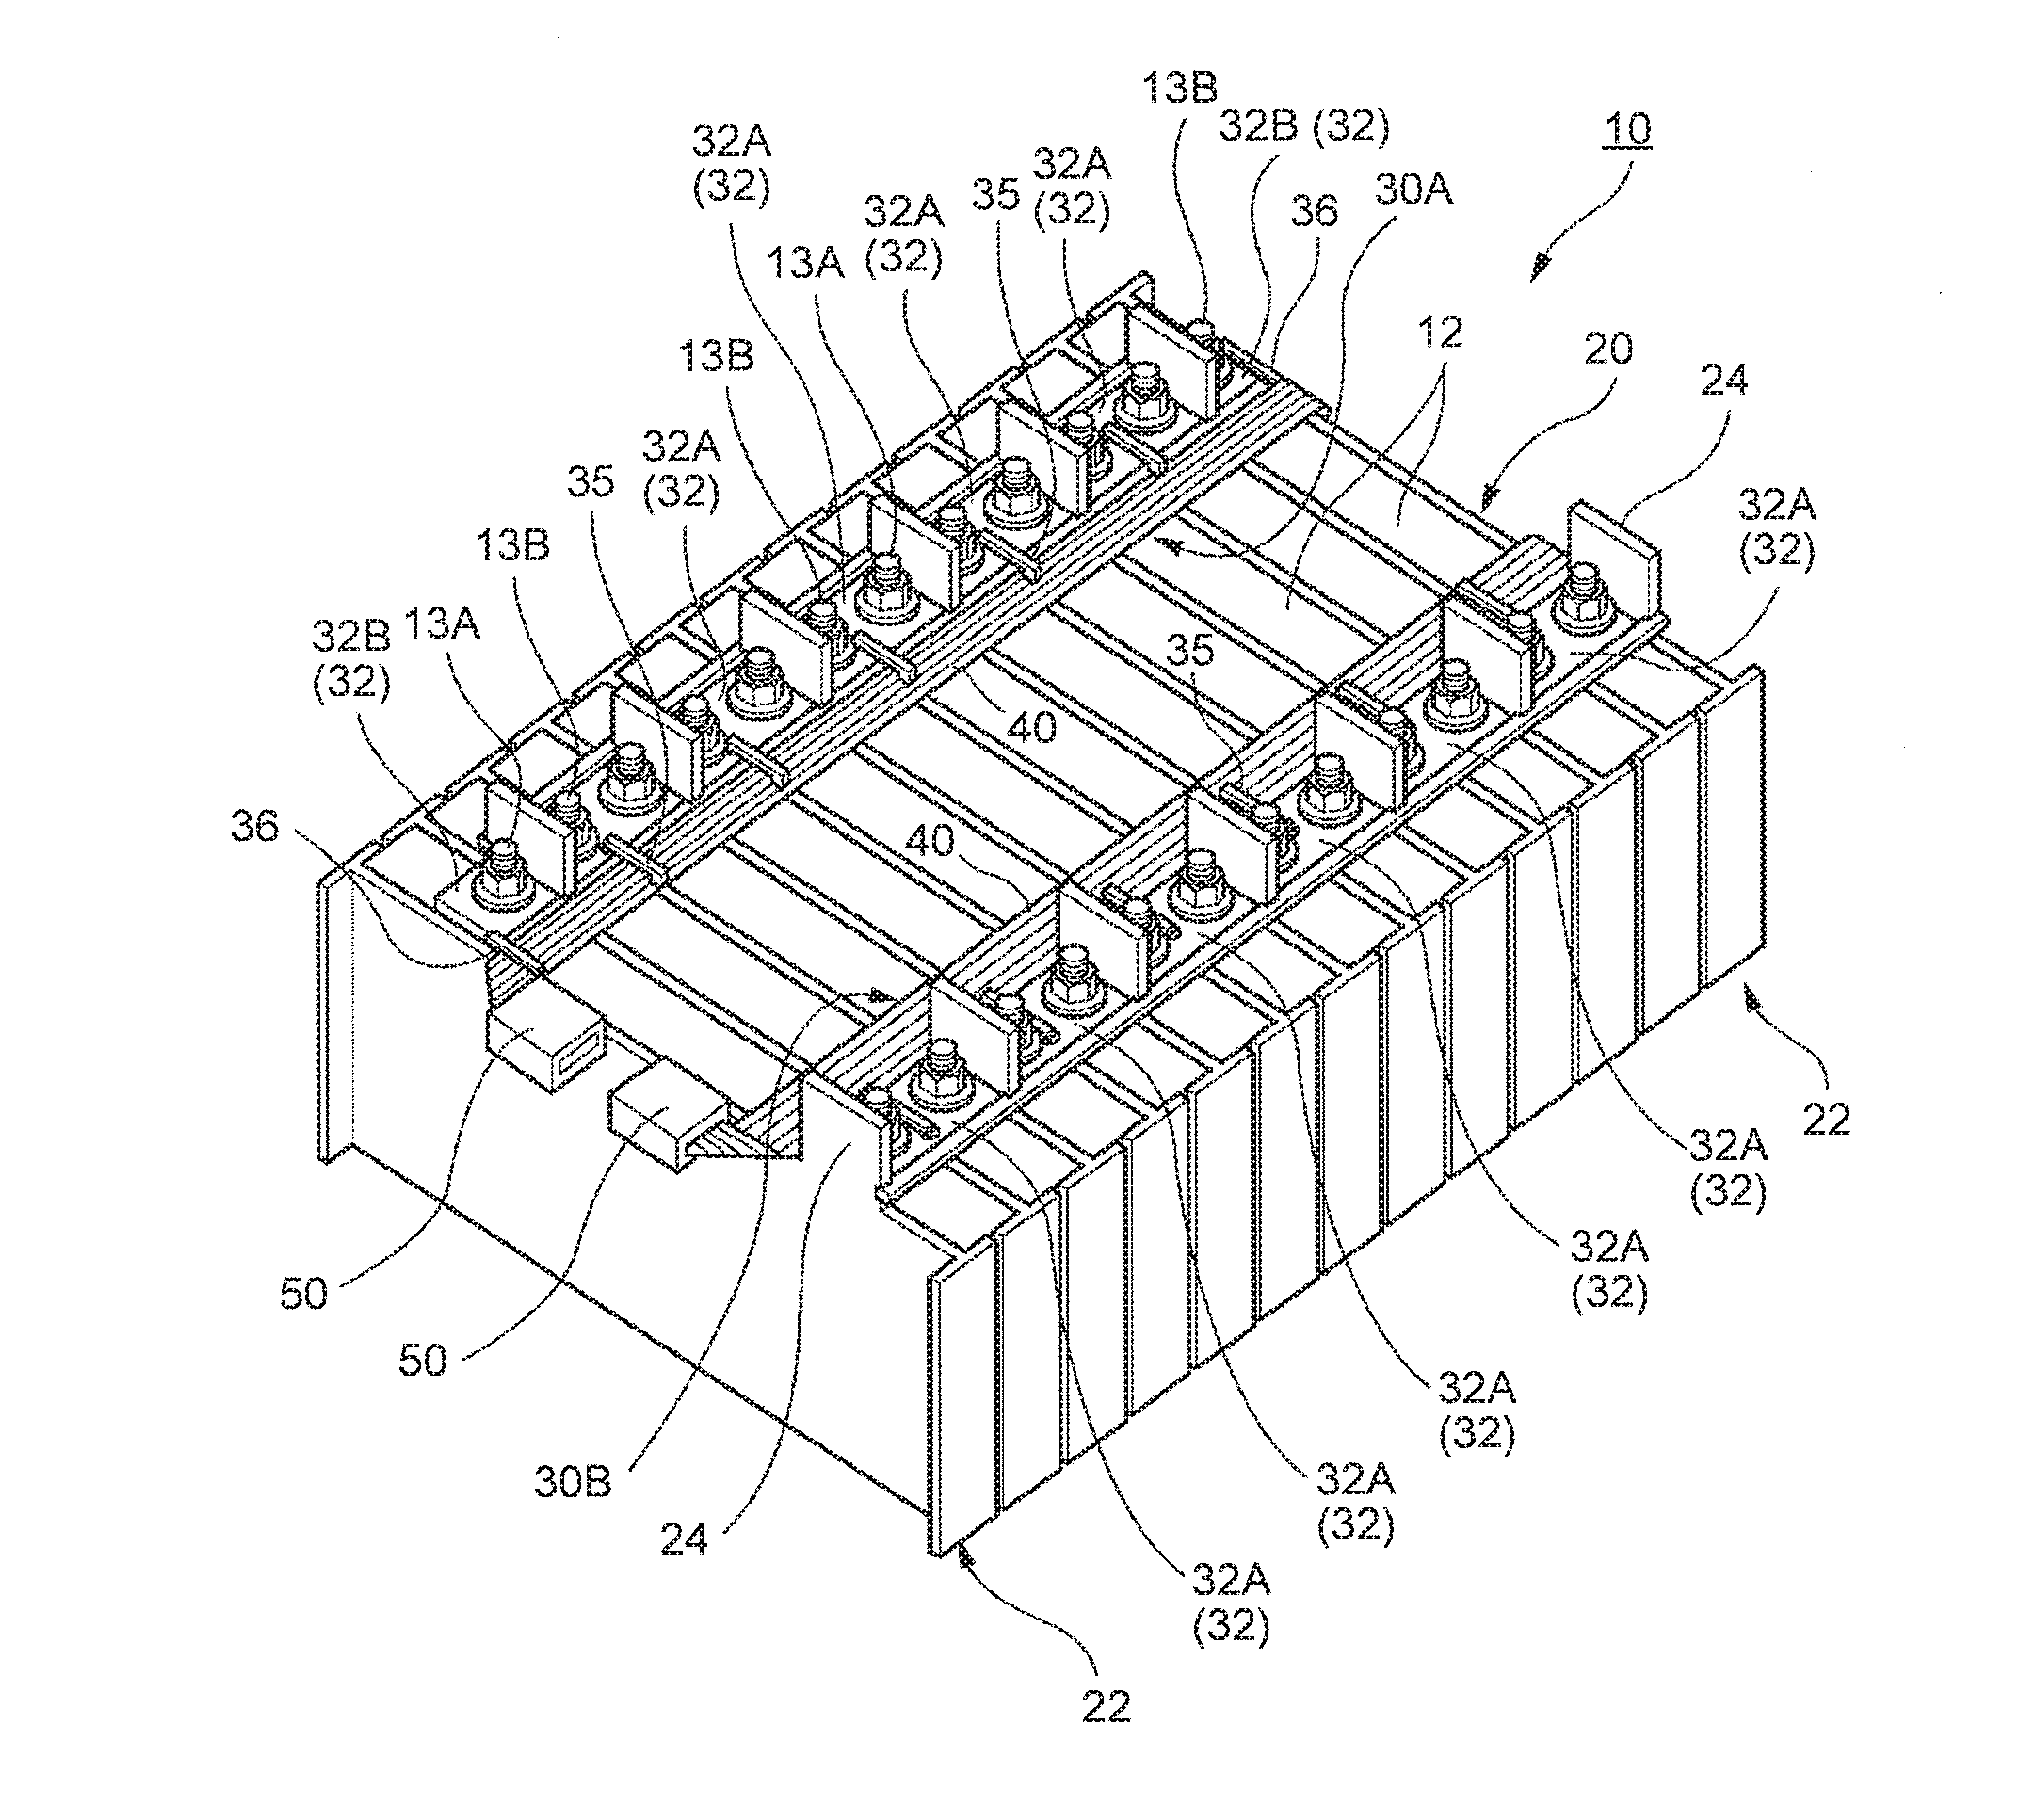 Battery wiring module